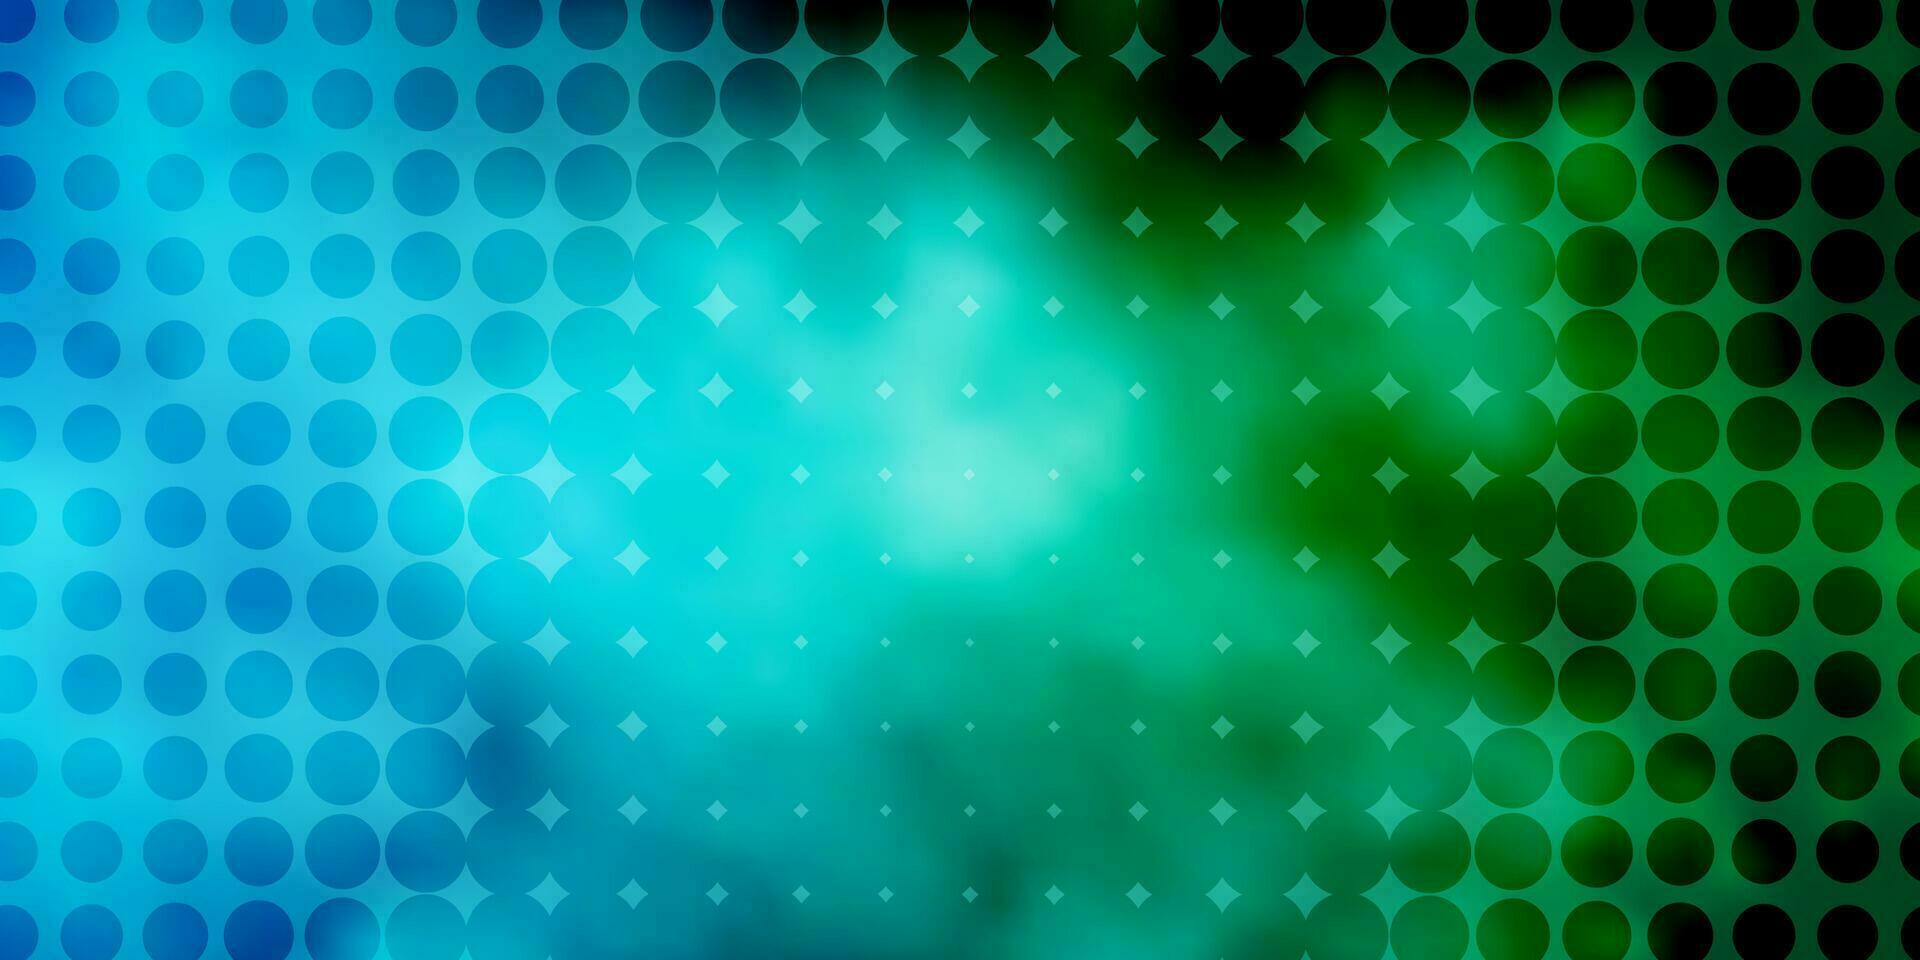 texture de vecteur bleu clair, vert avec des cercles.